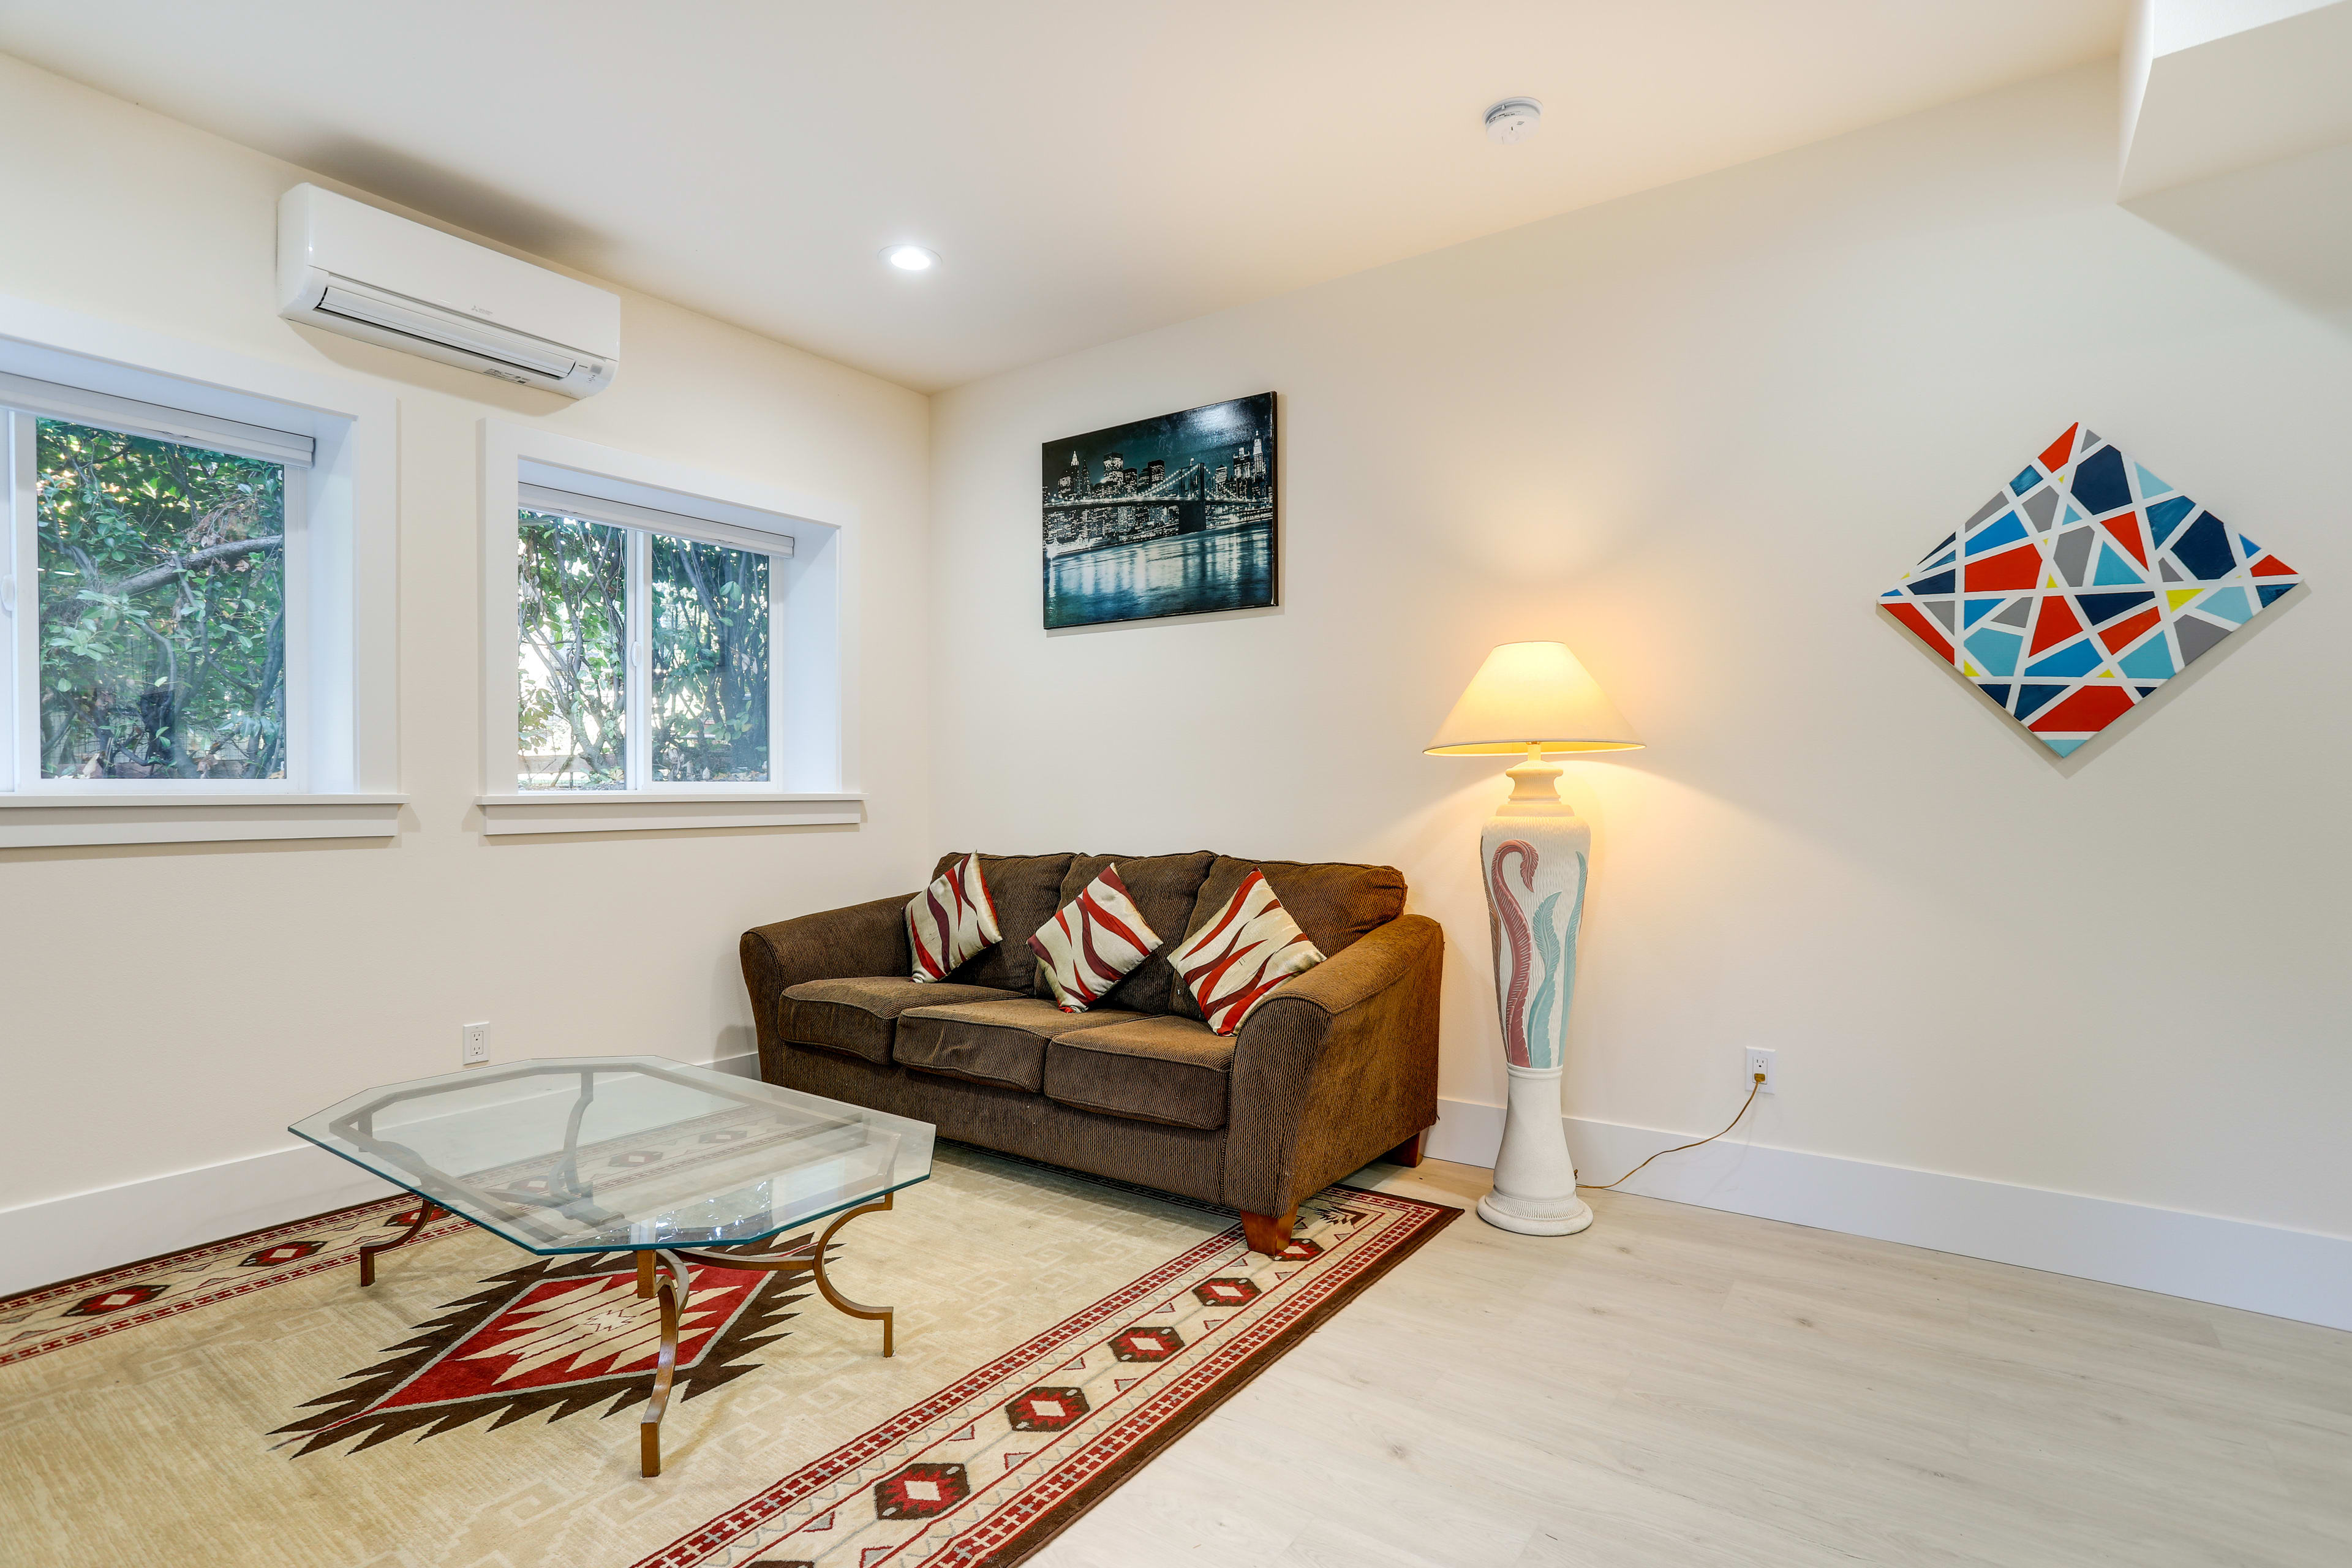 Living Room | Main Floor | Smart TV